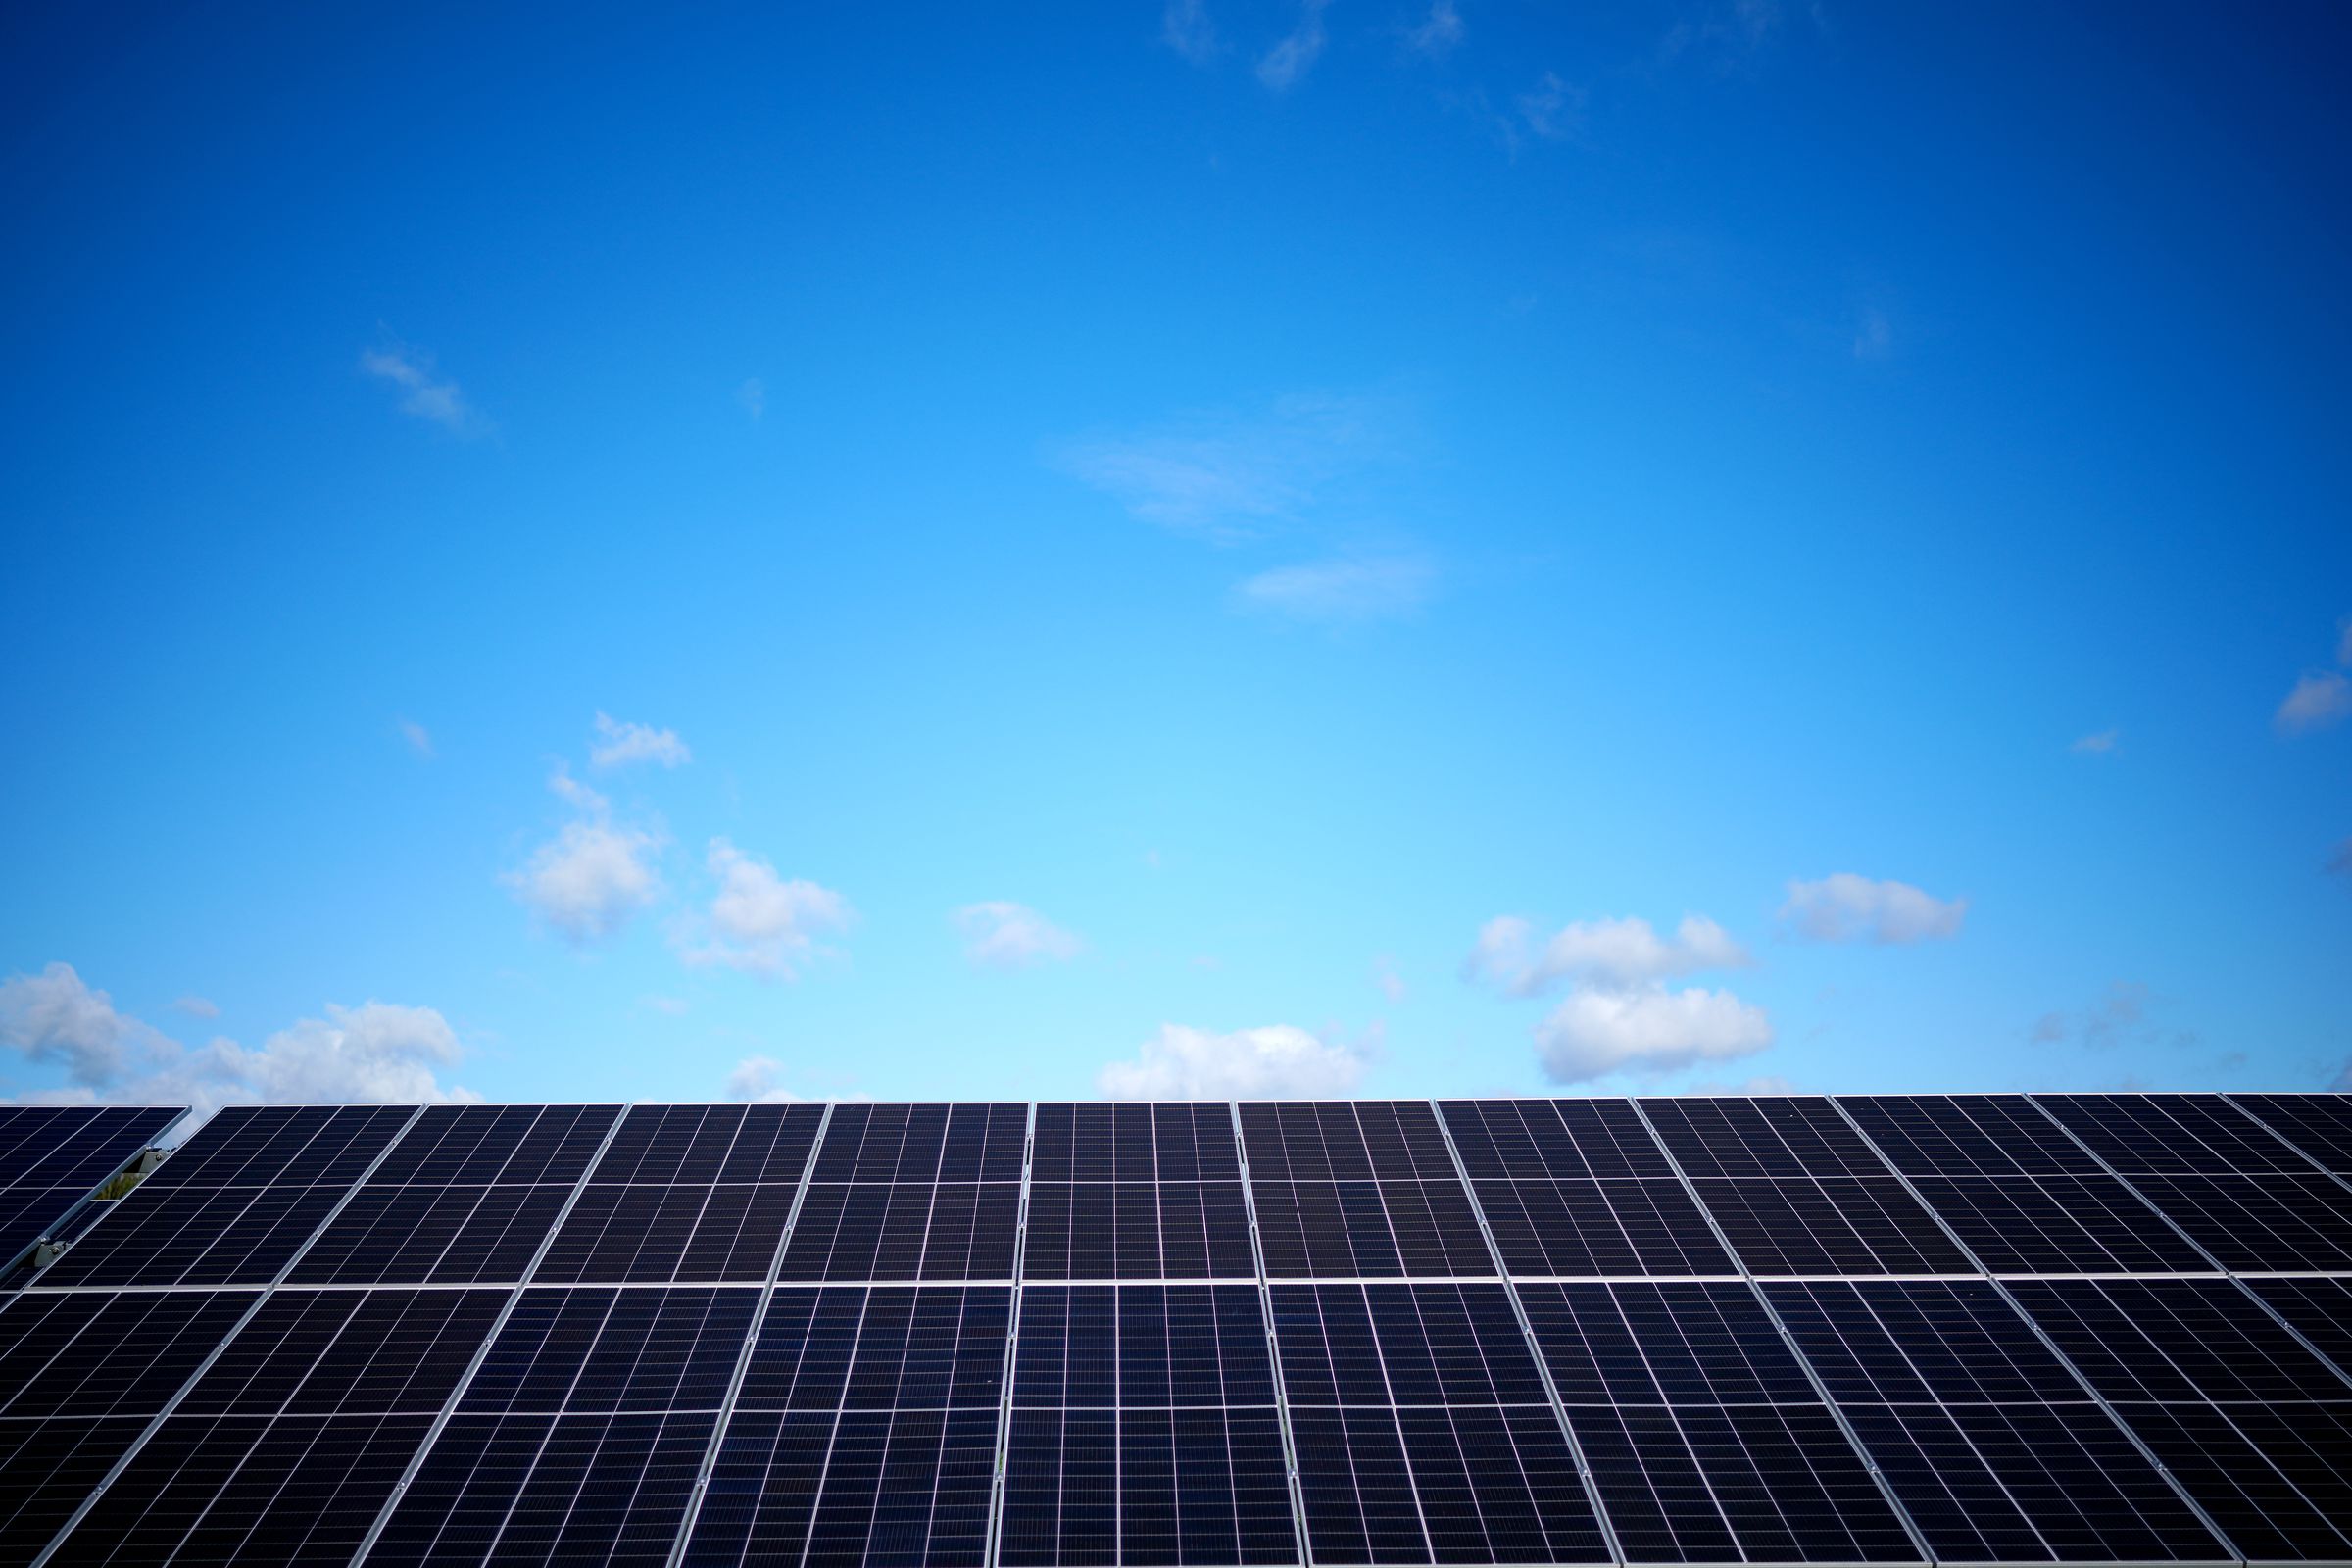 A row of solar panels below a blue sky.